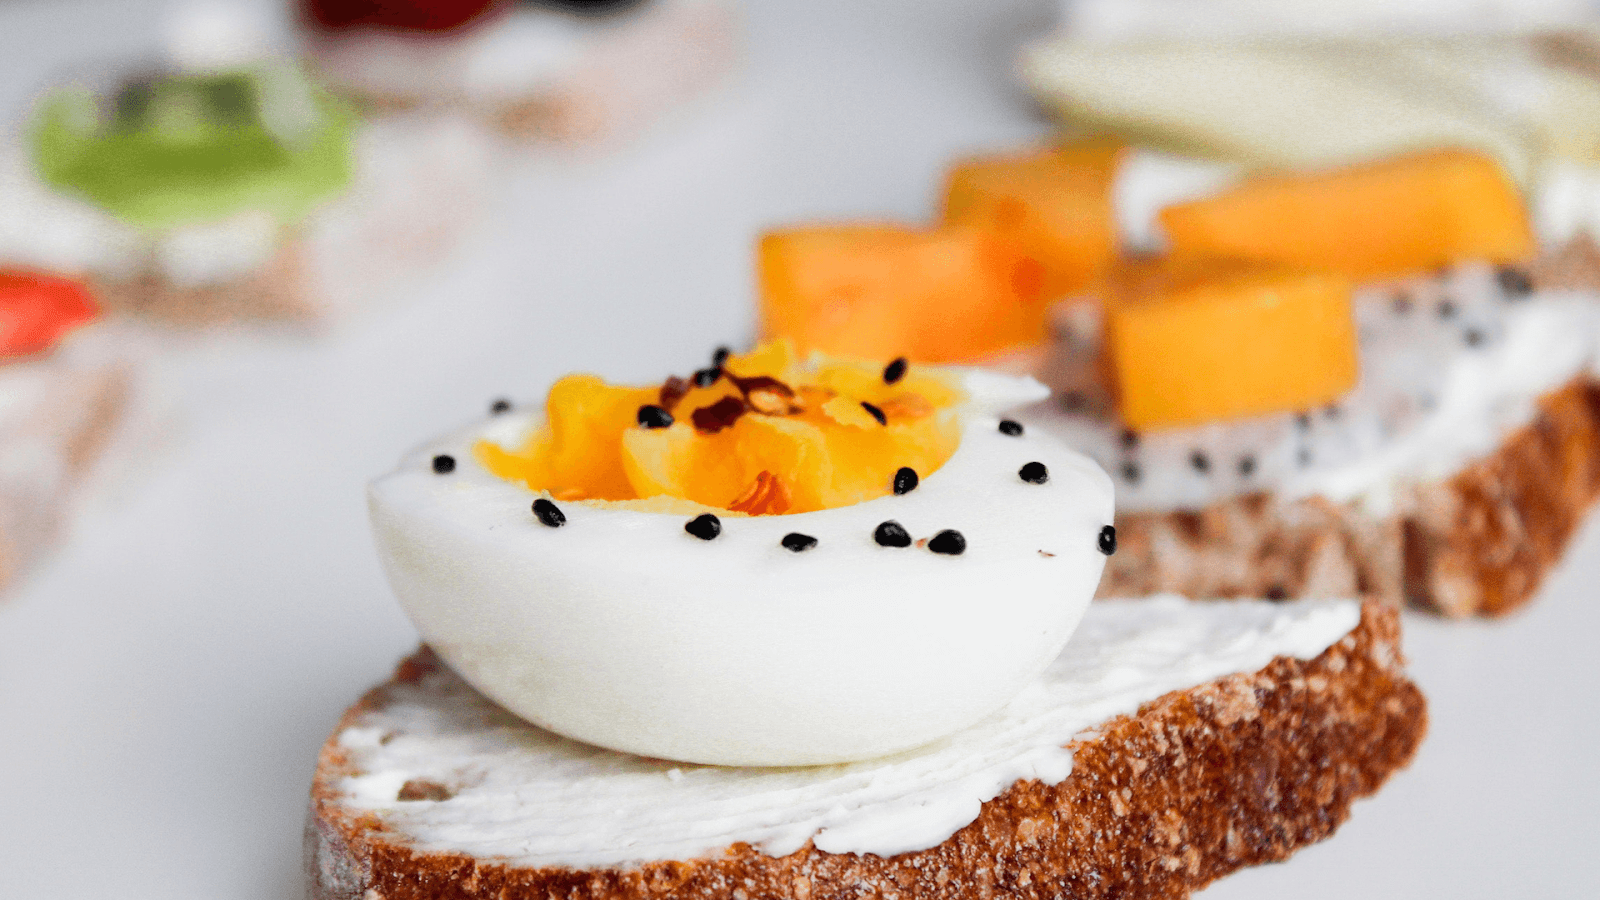 Trứng gà vừa là món ăn bổ dưỡng vừa hỗ trợ giảm cân rất hiệu quả